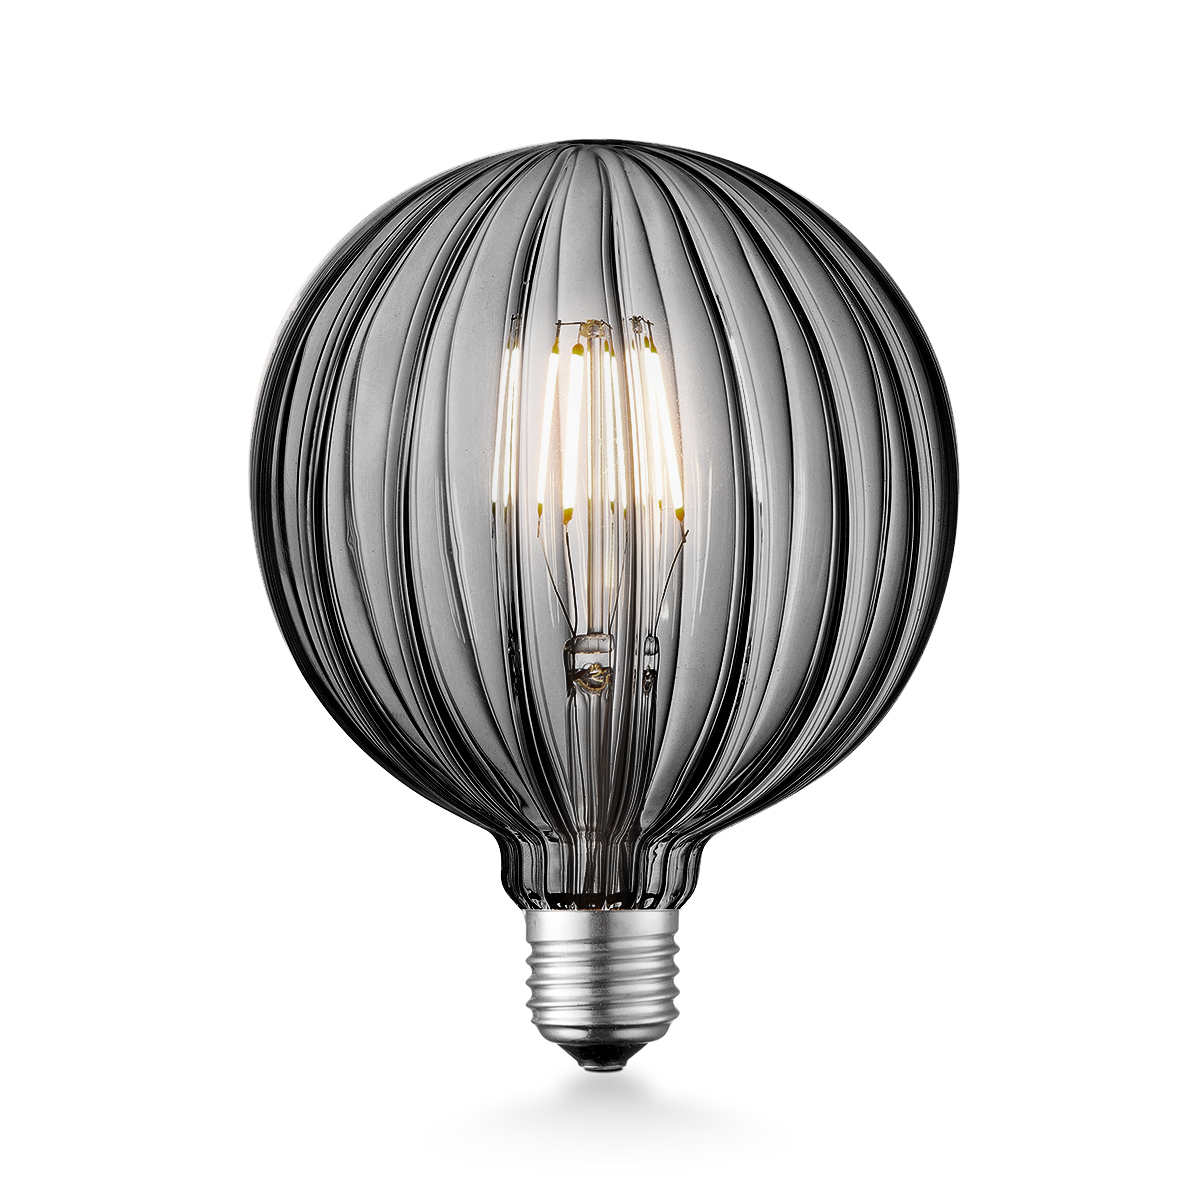 Tangla lighting - TLB-8074-04TM - LED Light Bulb Deco filament - G125 4W titanium - dimmable - E27